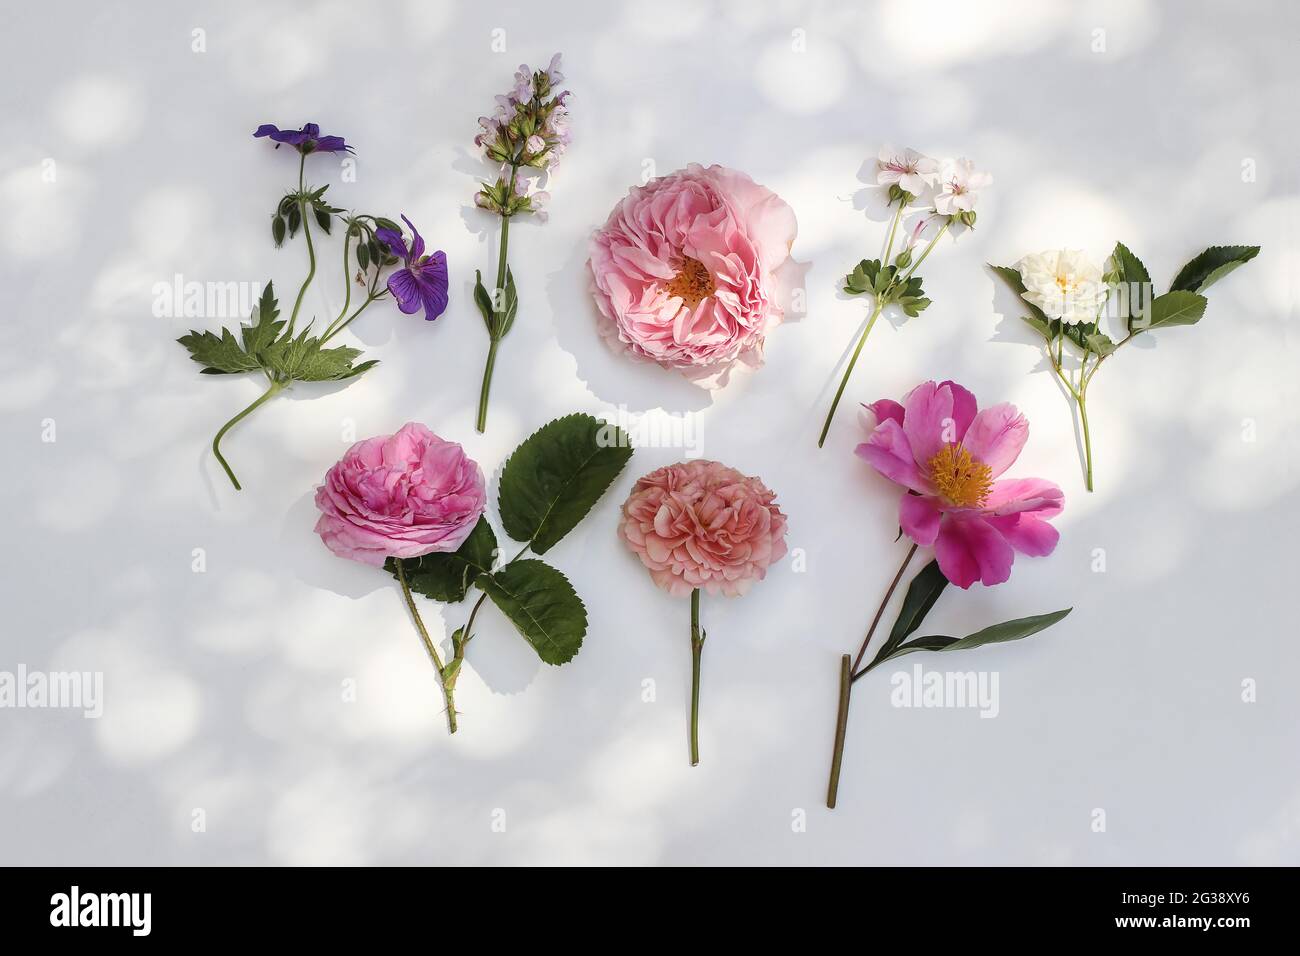 Feminine sommerliche florale Komposition. Gartenblumen und Kräuter isoliert auf weißem Tischhintergrund im Sonnenlicht. Bunte Rosen, Salbei, Pfingstrose und Geranie Stockfoto